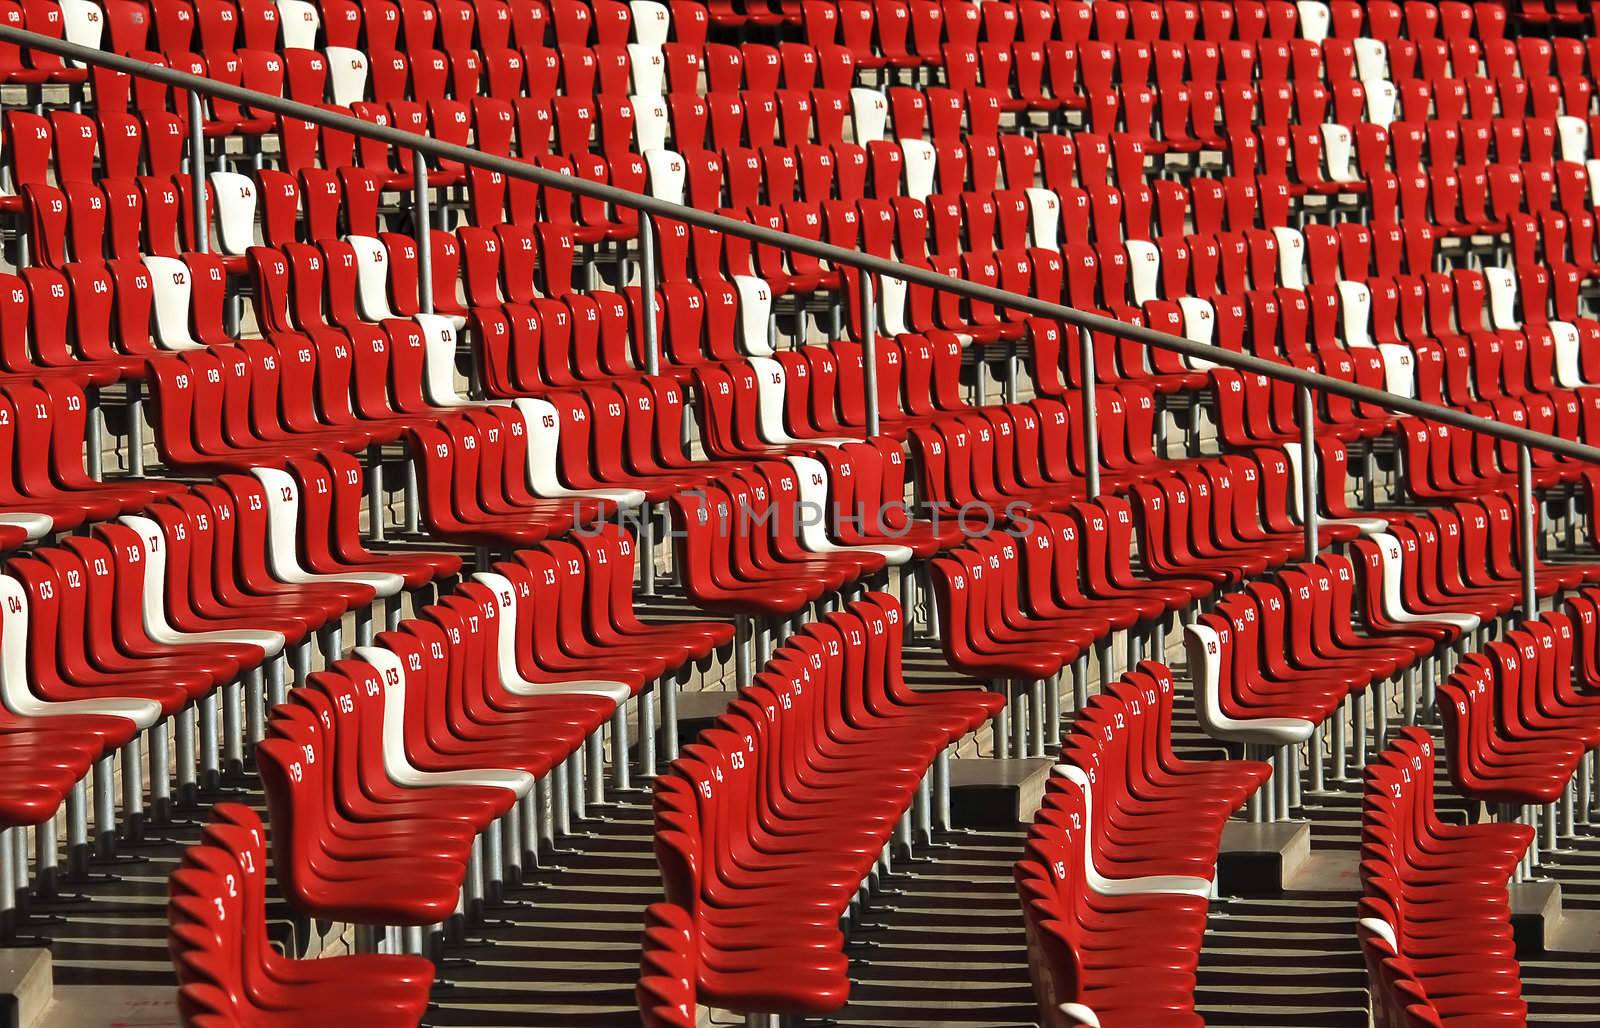 Stadium interior seats